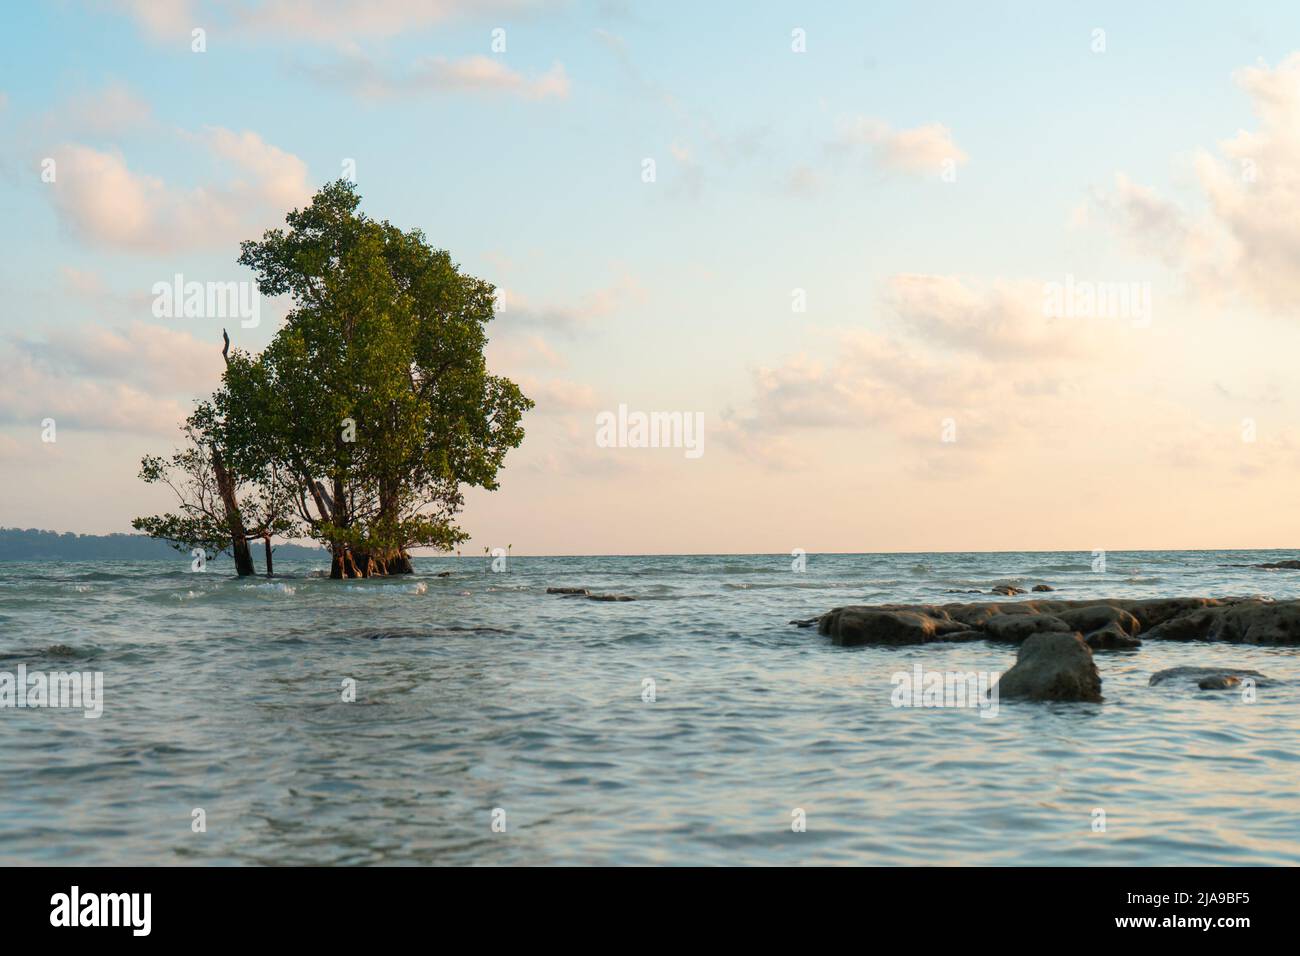 prise de vue au lever du soleil au crépuscule montrant un mangrove solitaire au milieu de l'océan sur une plage et les couleurs or rouges de la prise de vue à l'aube à havelock swaraj dweep Banque D'Images